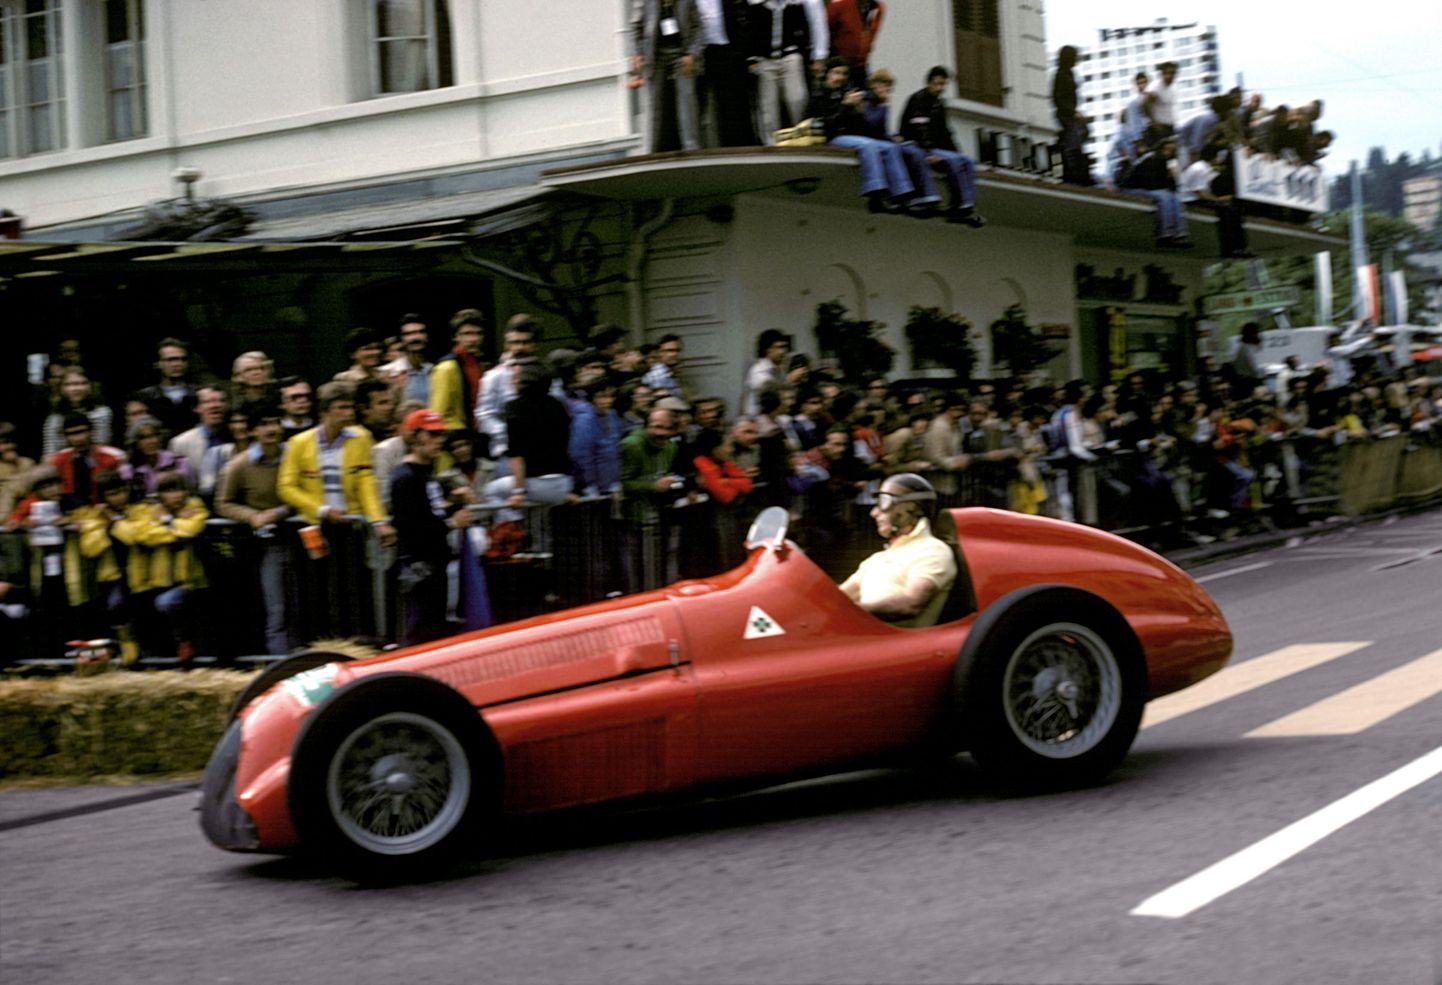 Viiekordne maailmameister Juan Manuel Fangio keerab 1976. aastal demonstratsioonsõidul oma legendaarse Alfa Romeo 158 rooli.